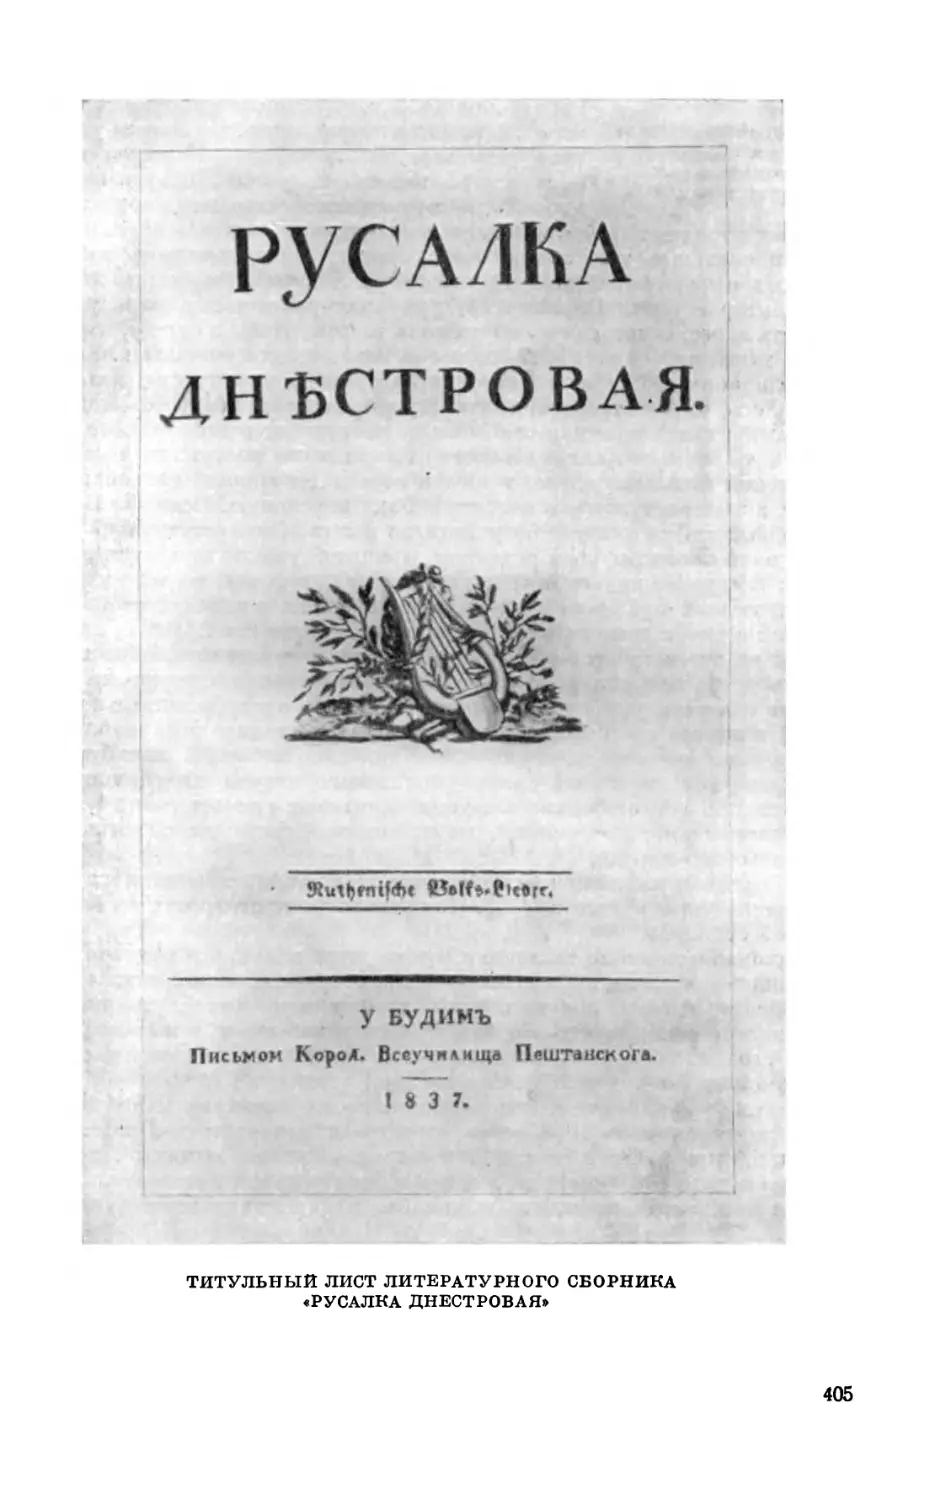 Торжество контрреволюции
Итоги революции 1848 г. в Галиции